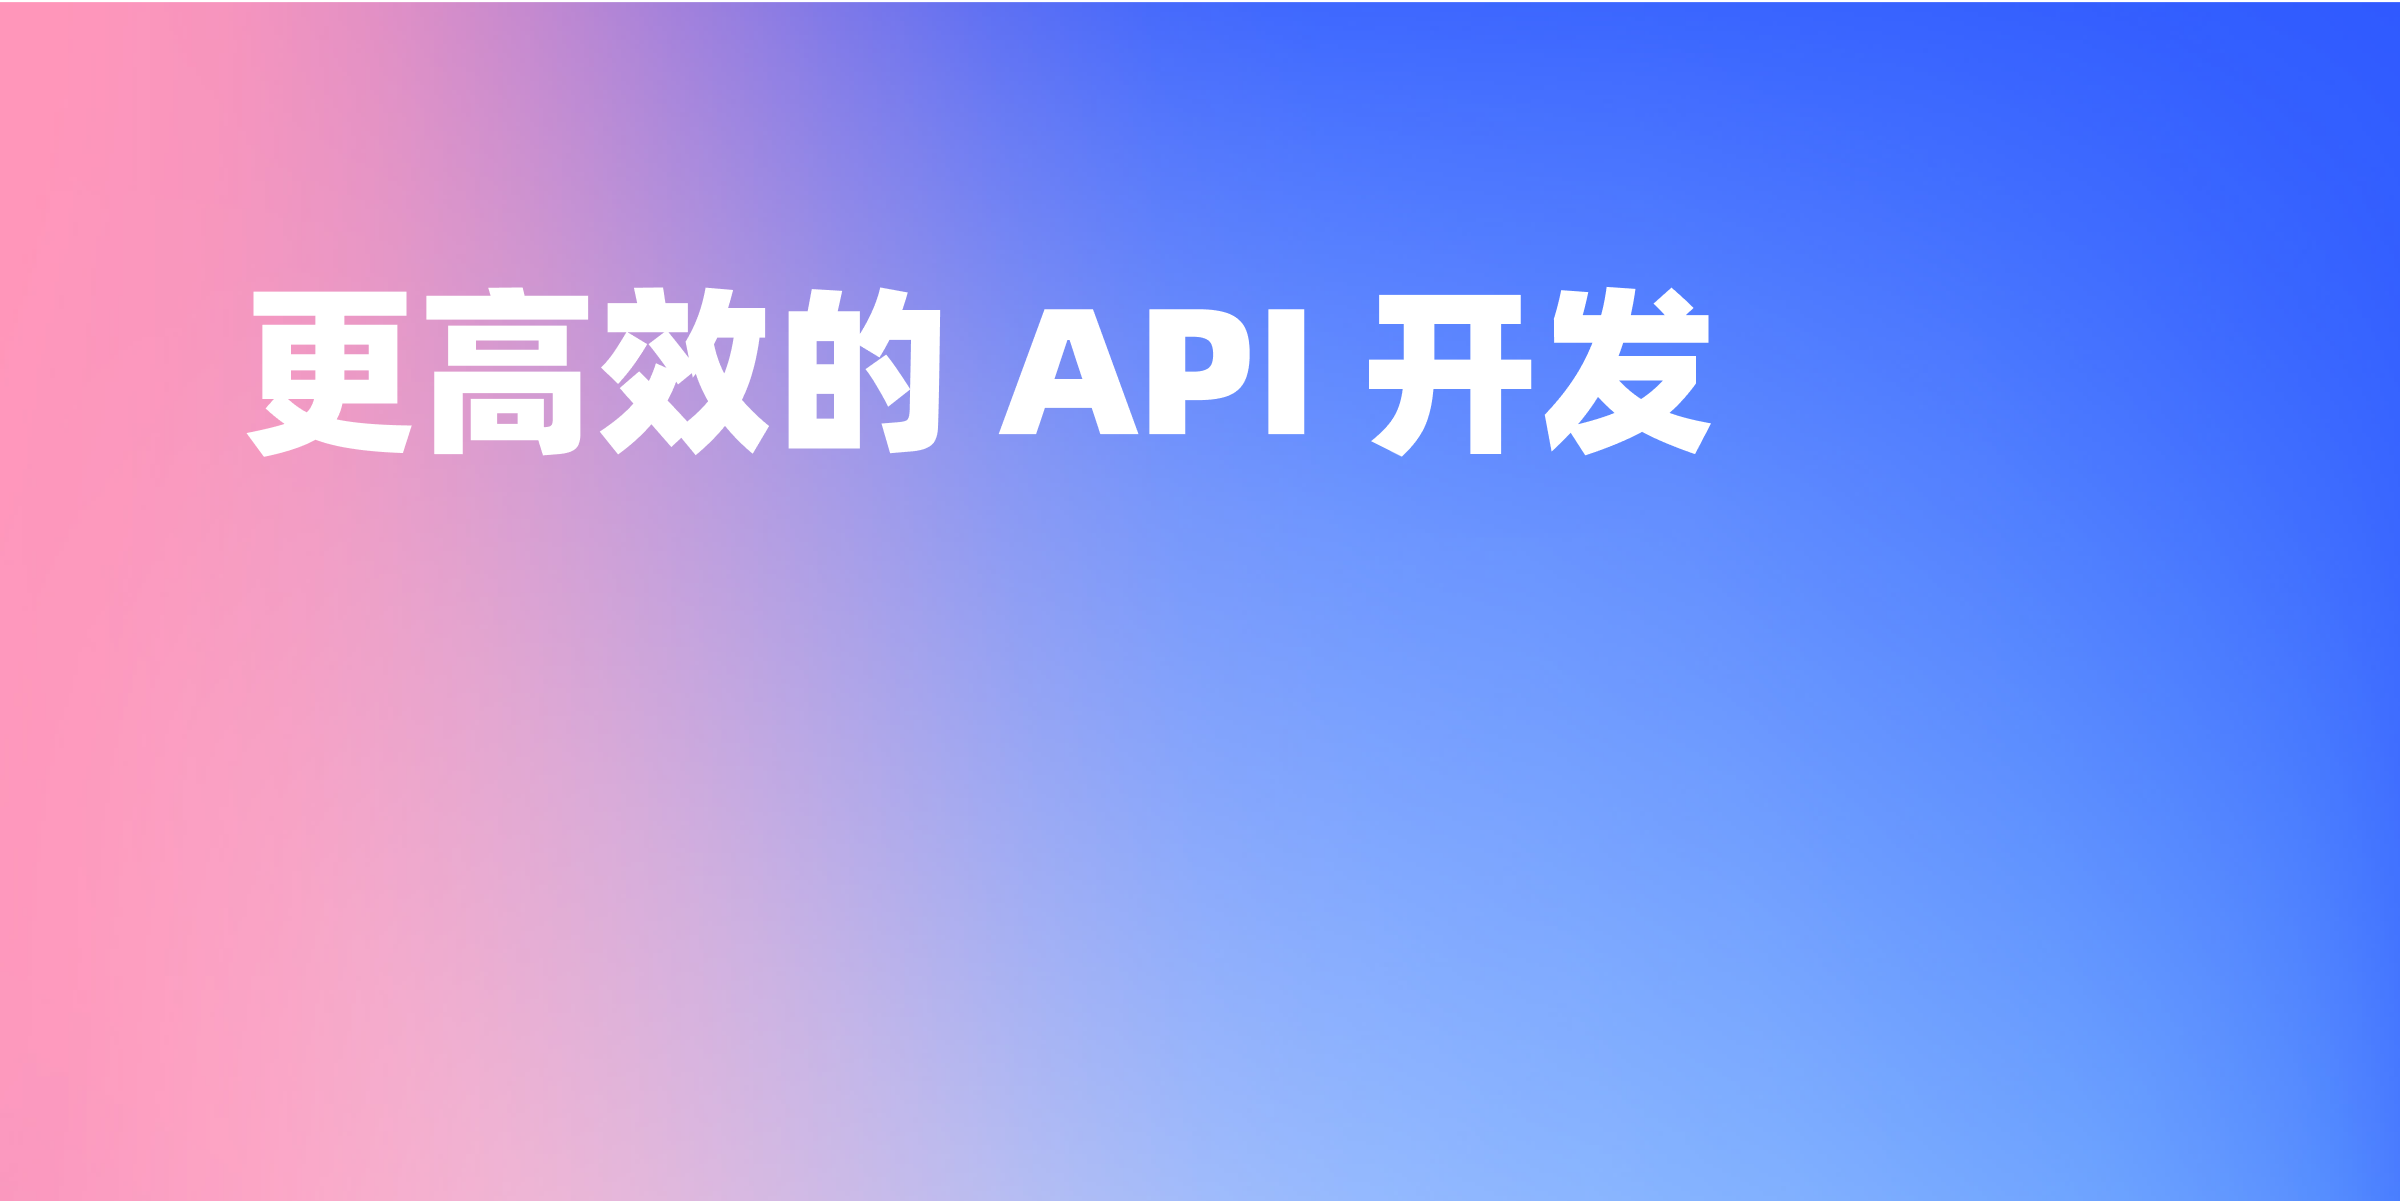 如何使用 Apifox 进行 Mock 以便轻松测试 API